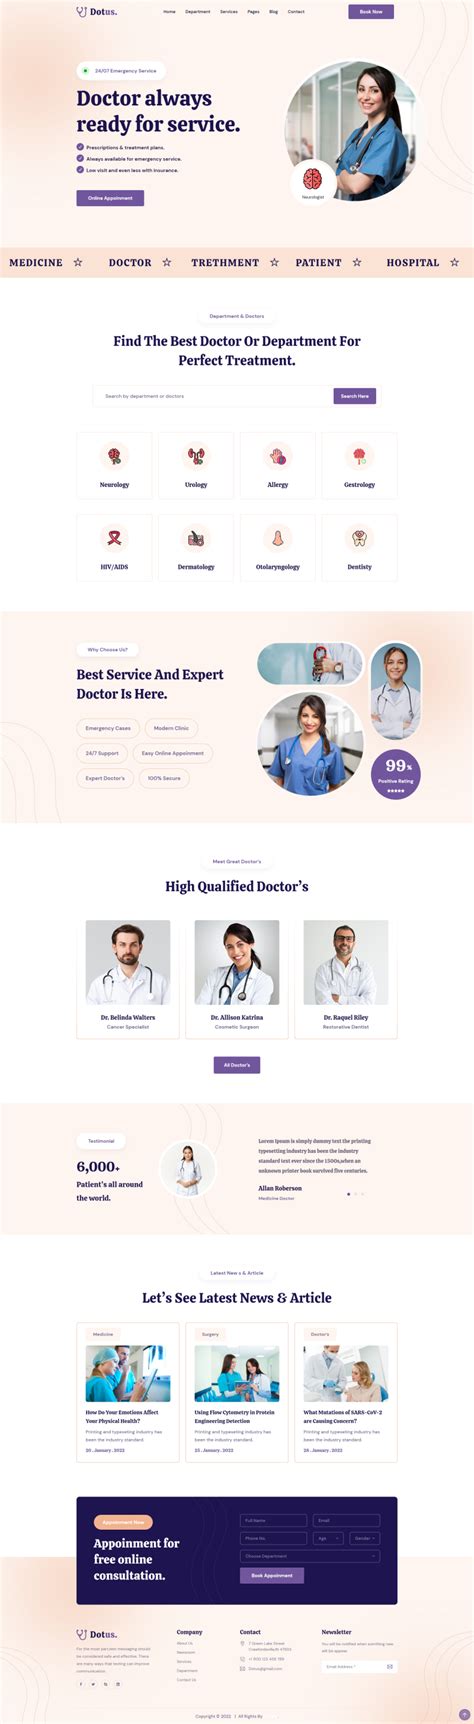 健康医疗行业网站模板下载，简约大气的医疗行业网站模板设计_墨鱼部落格